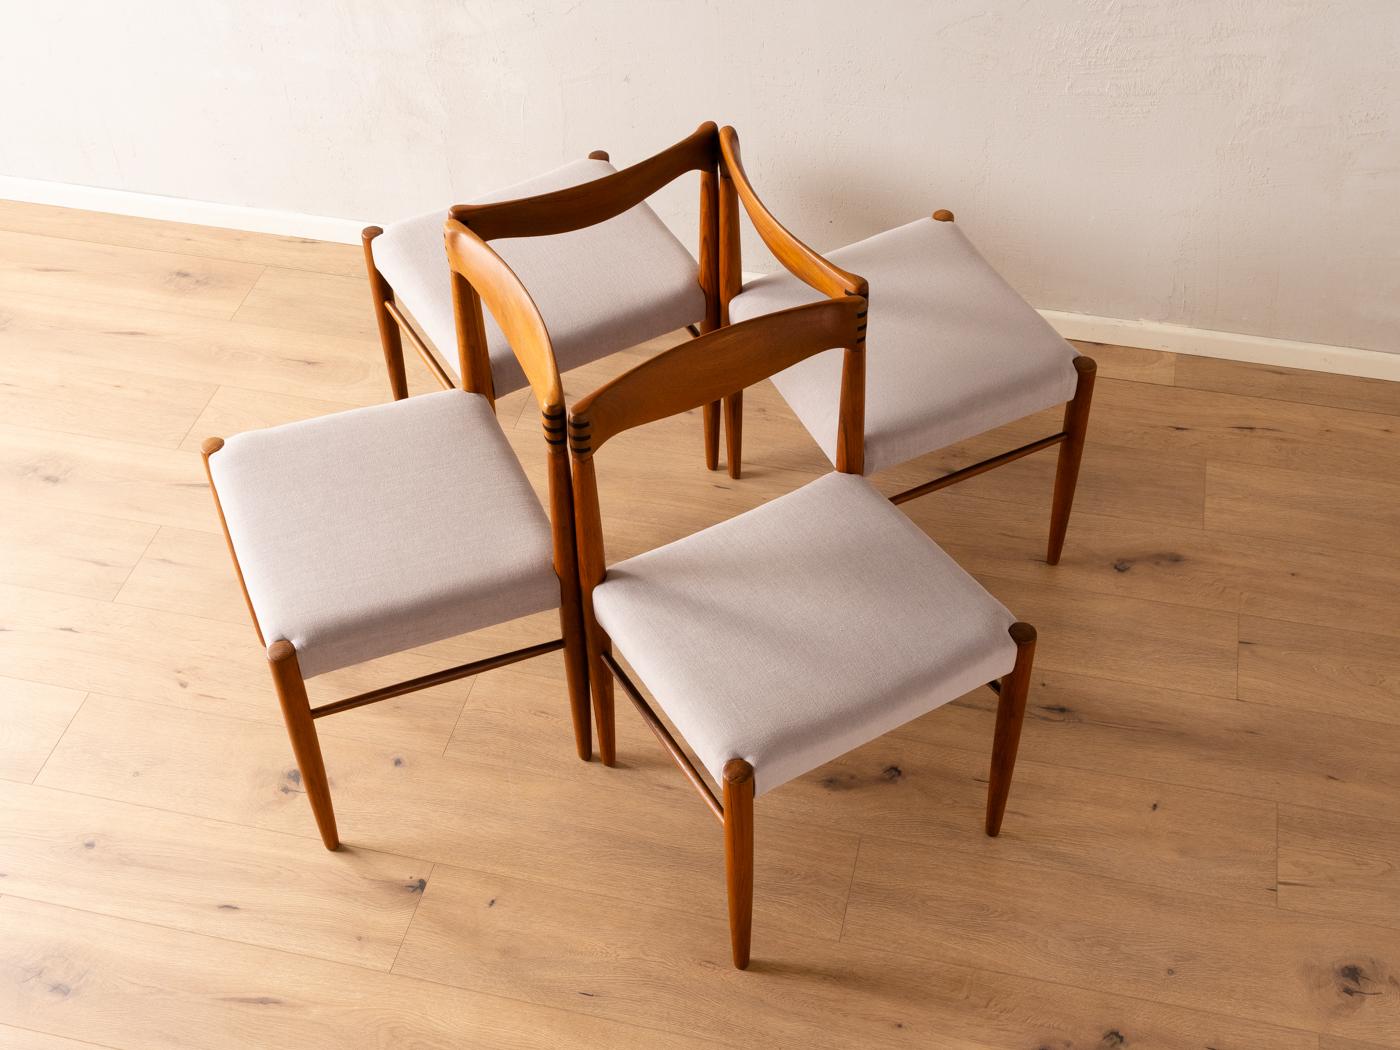 Chaises classiques des années 1960 par H.W. Klein pour Bramin. Cadre en teck massif avec dossier à tenons et mortaises. Les chaises ont été retapissées et recouvertes d'un tissu de haute qualité en gris clair. L'offre comprend 4